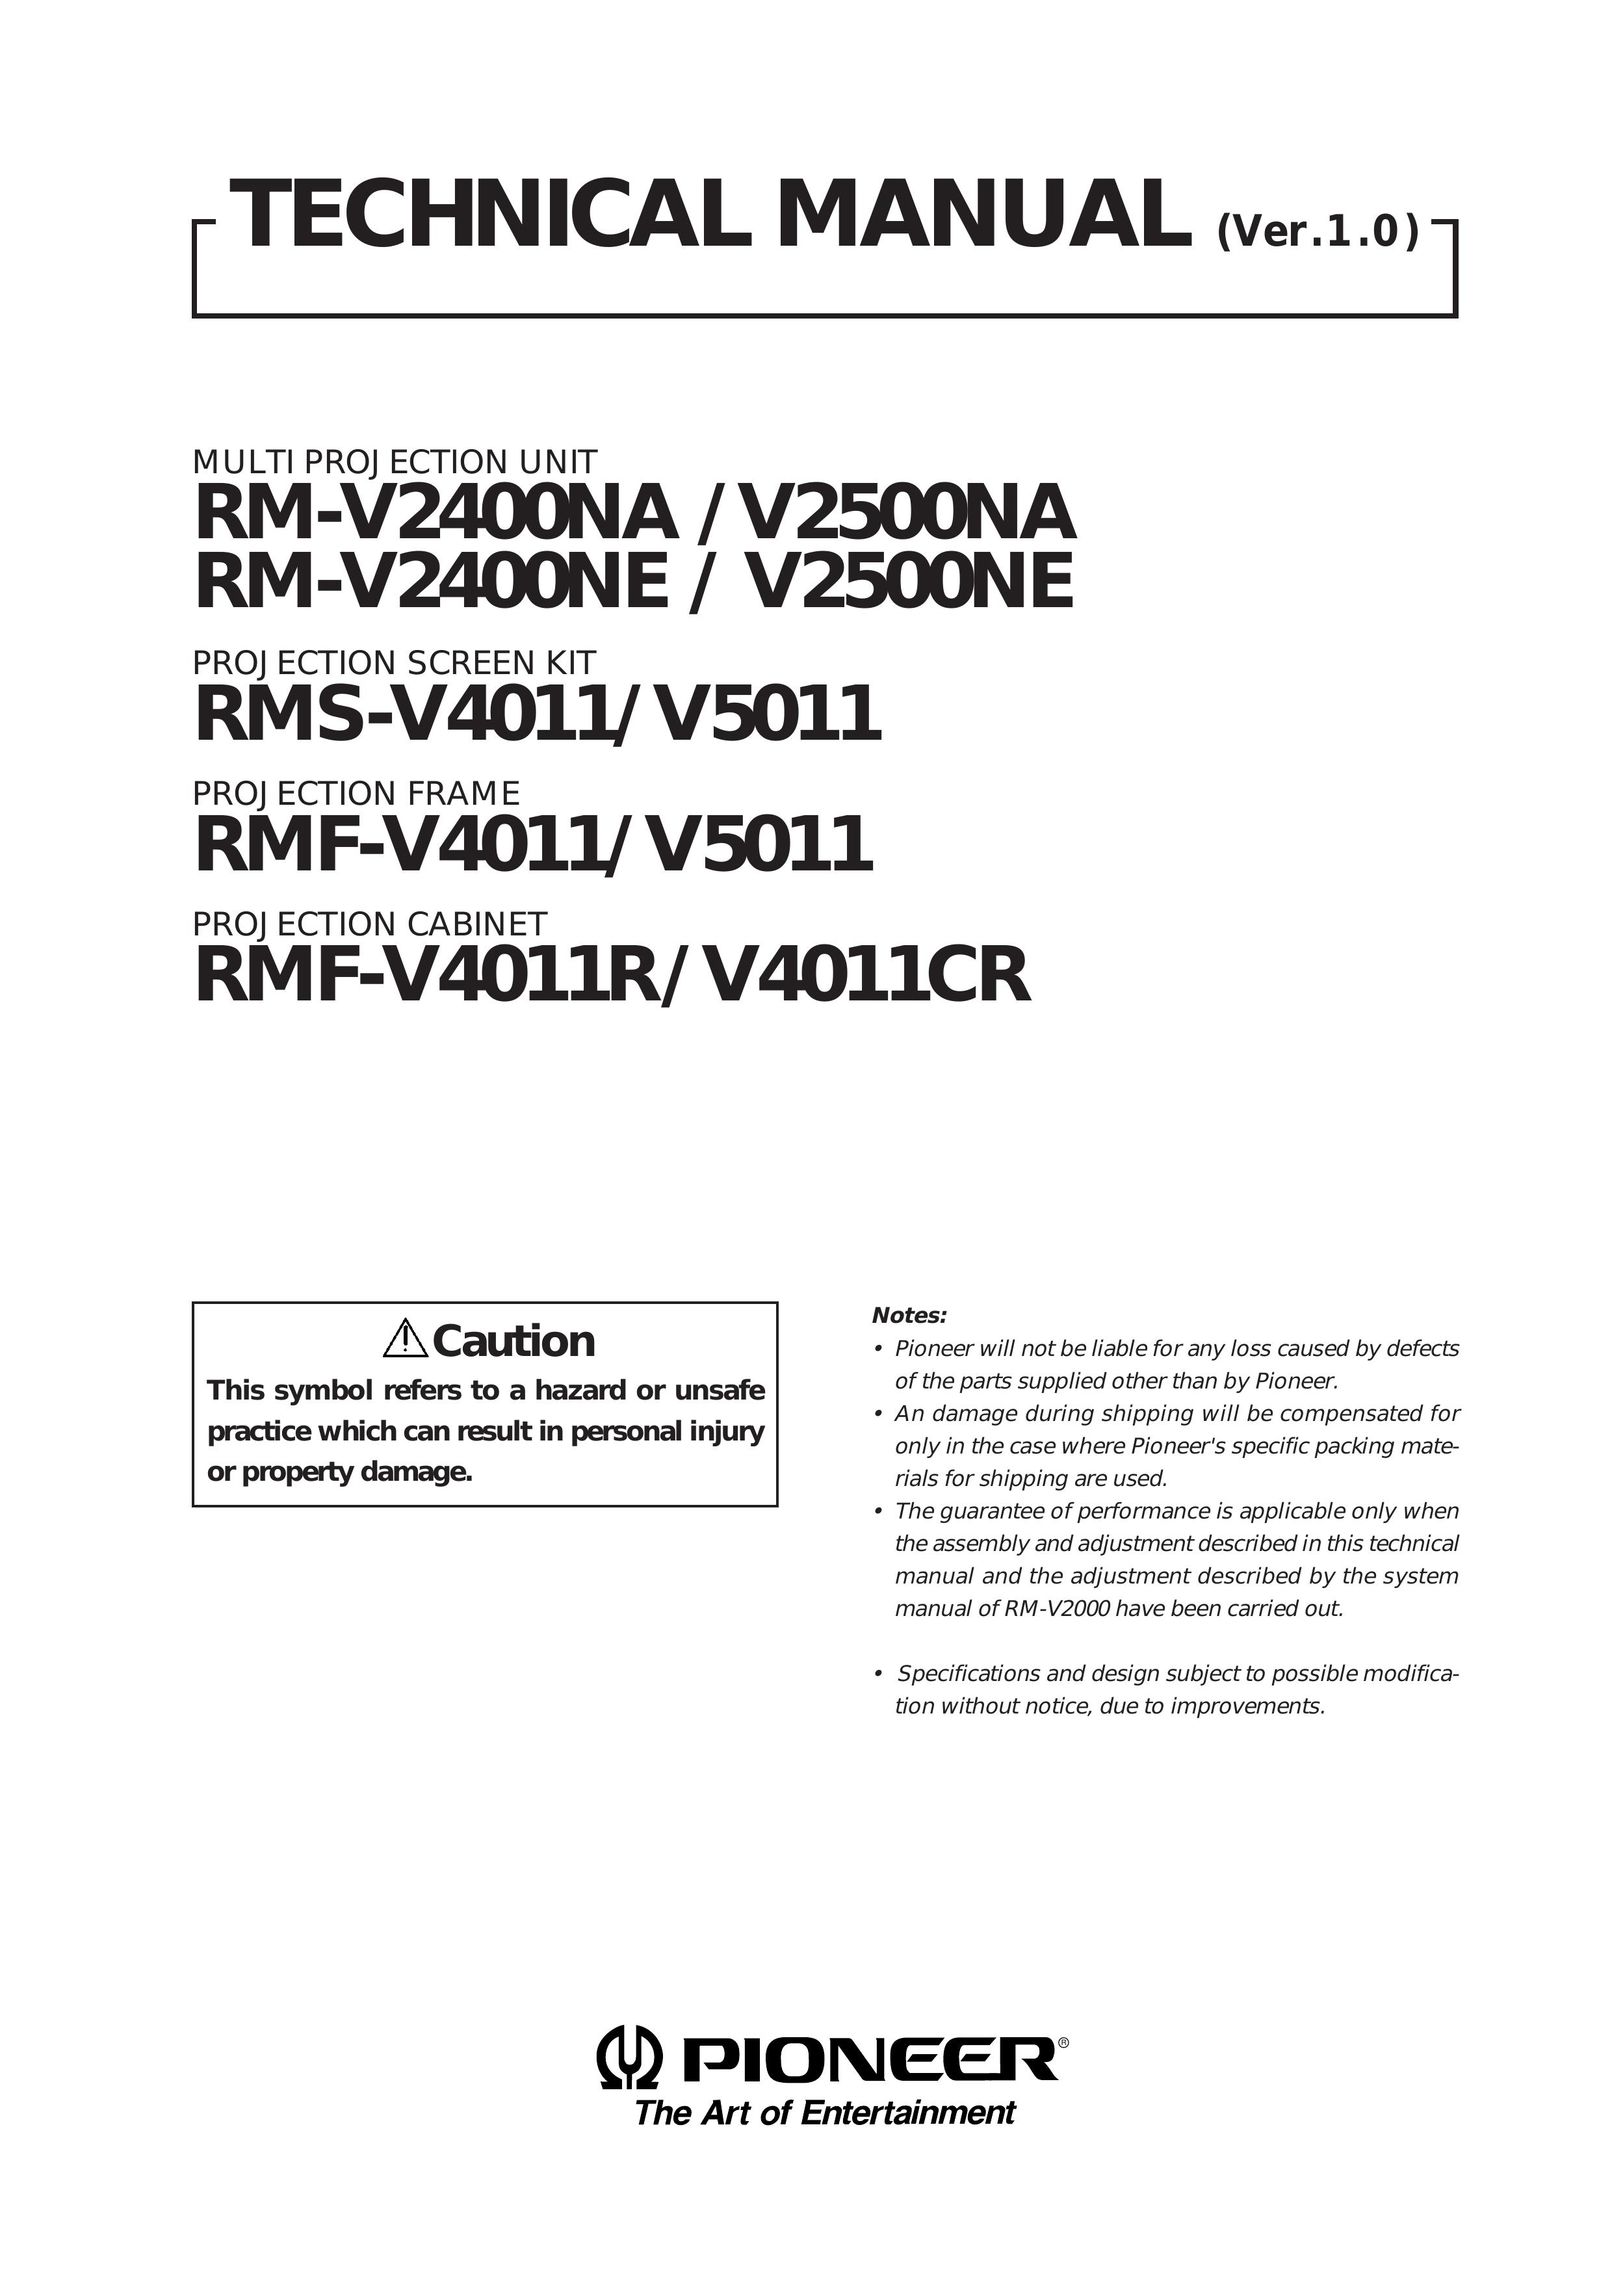 Pioneer V4011CR Projector User Manual